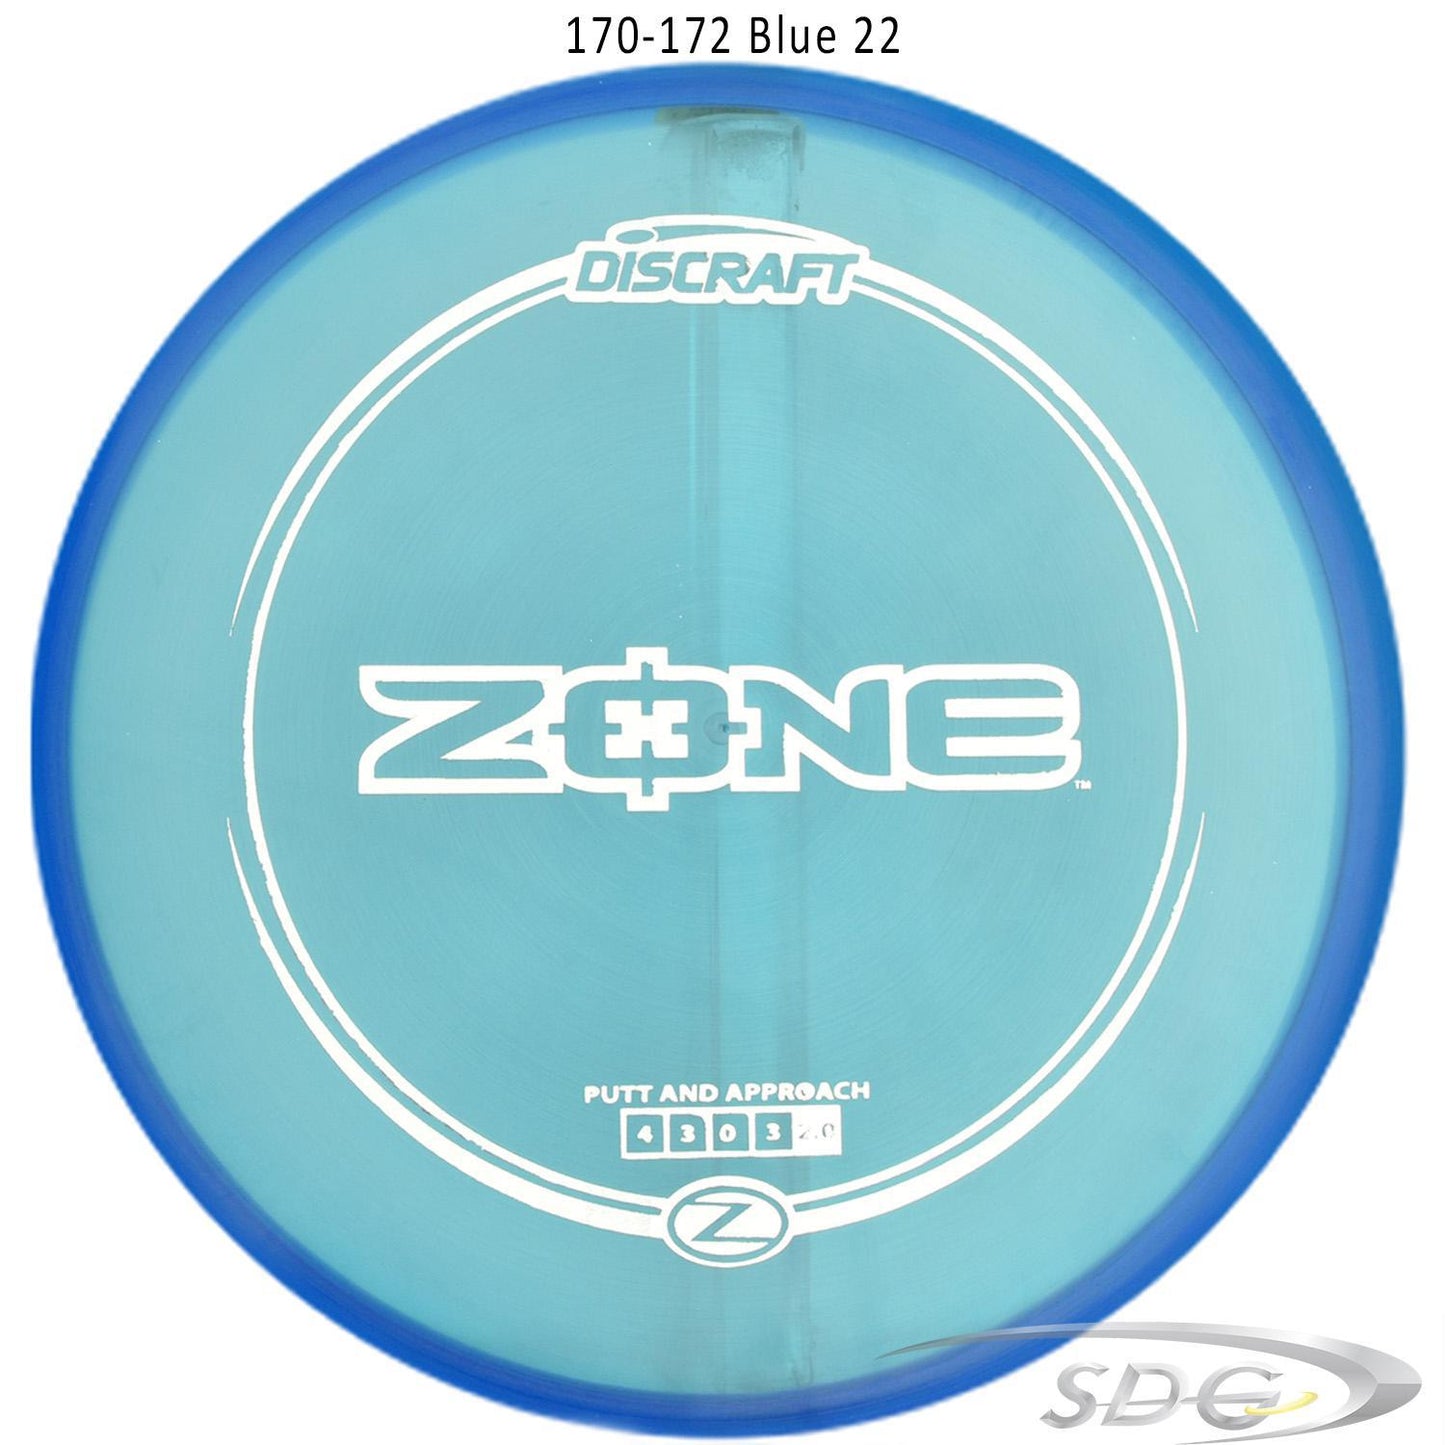 discraft-z-line-zone-disc-golf-putter 170-172 Blue 22